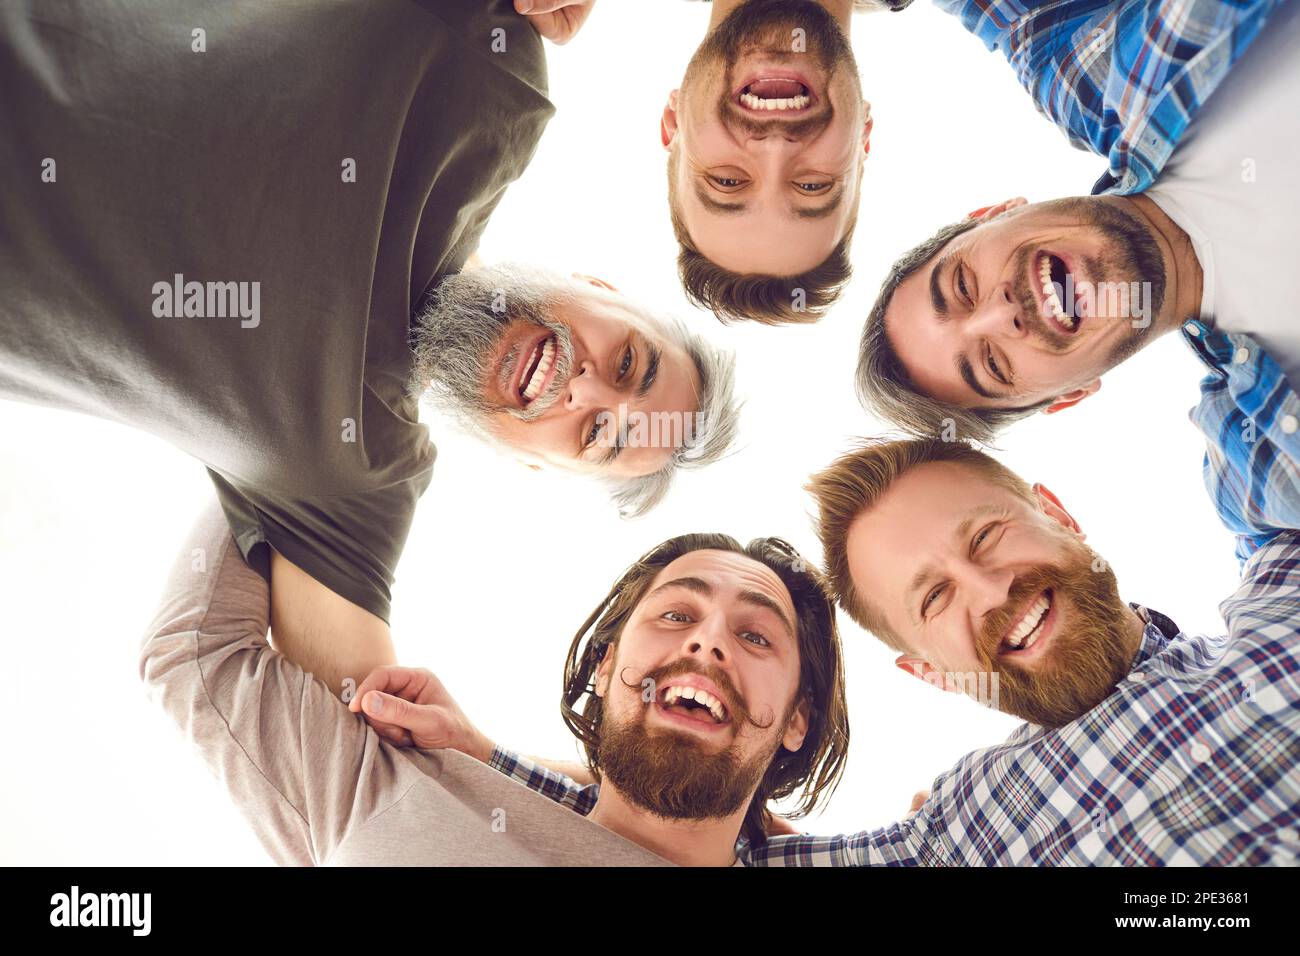 Groupe d'amis hommes heureux qui se mêlent, regardant l'appareil photo, souriant et riant Banque D'Images